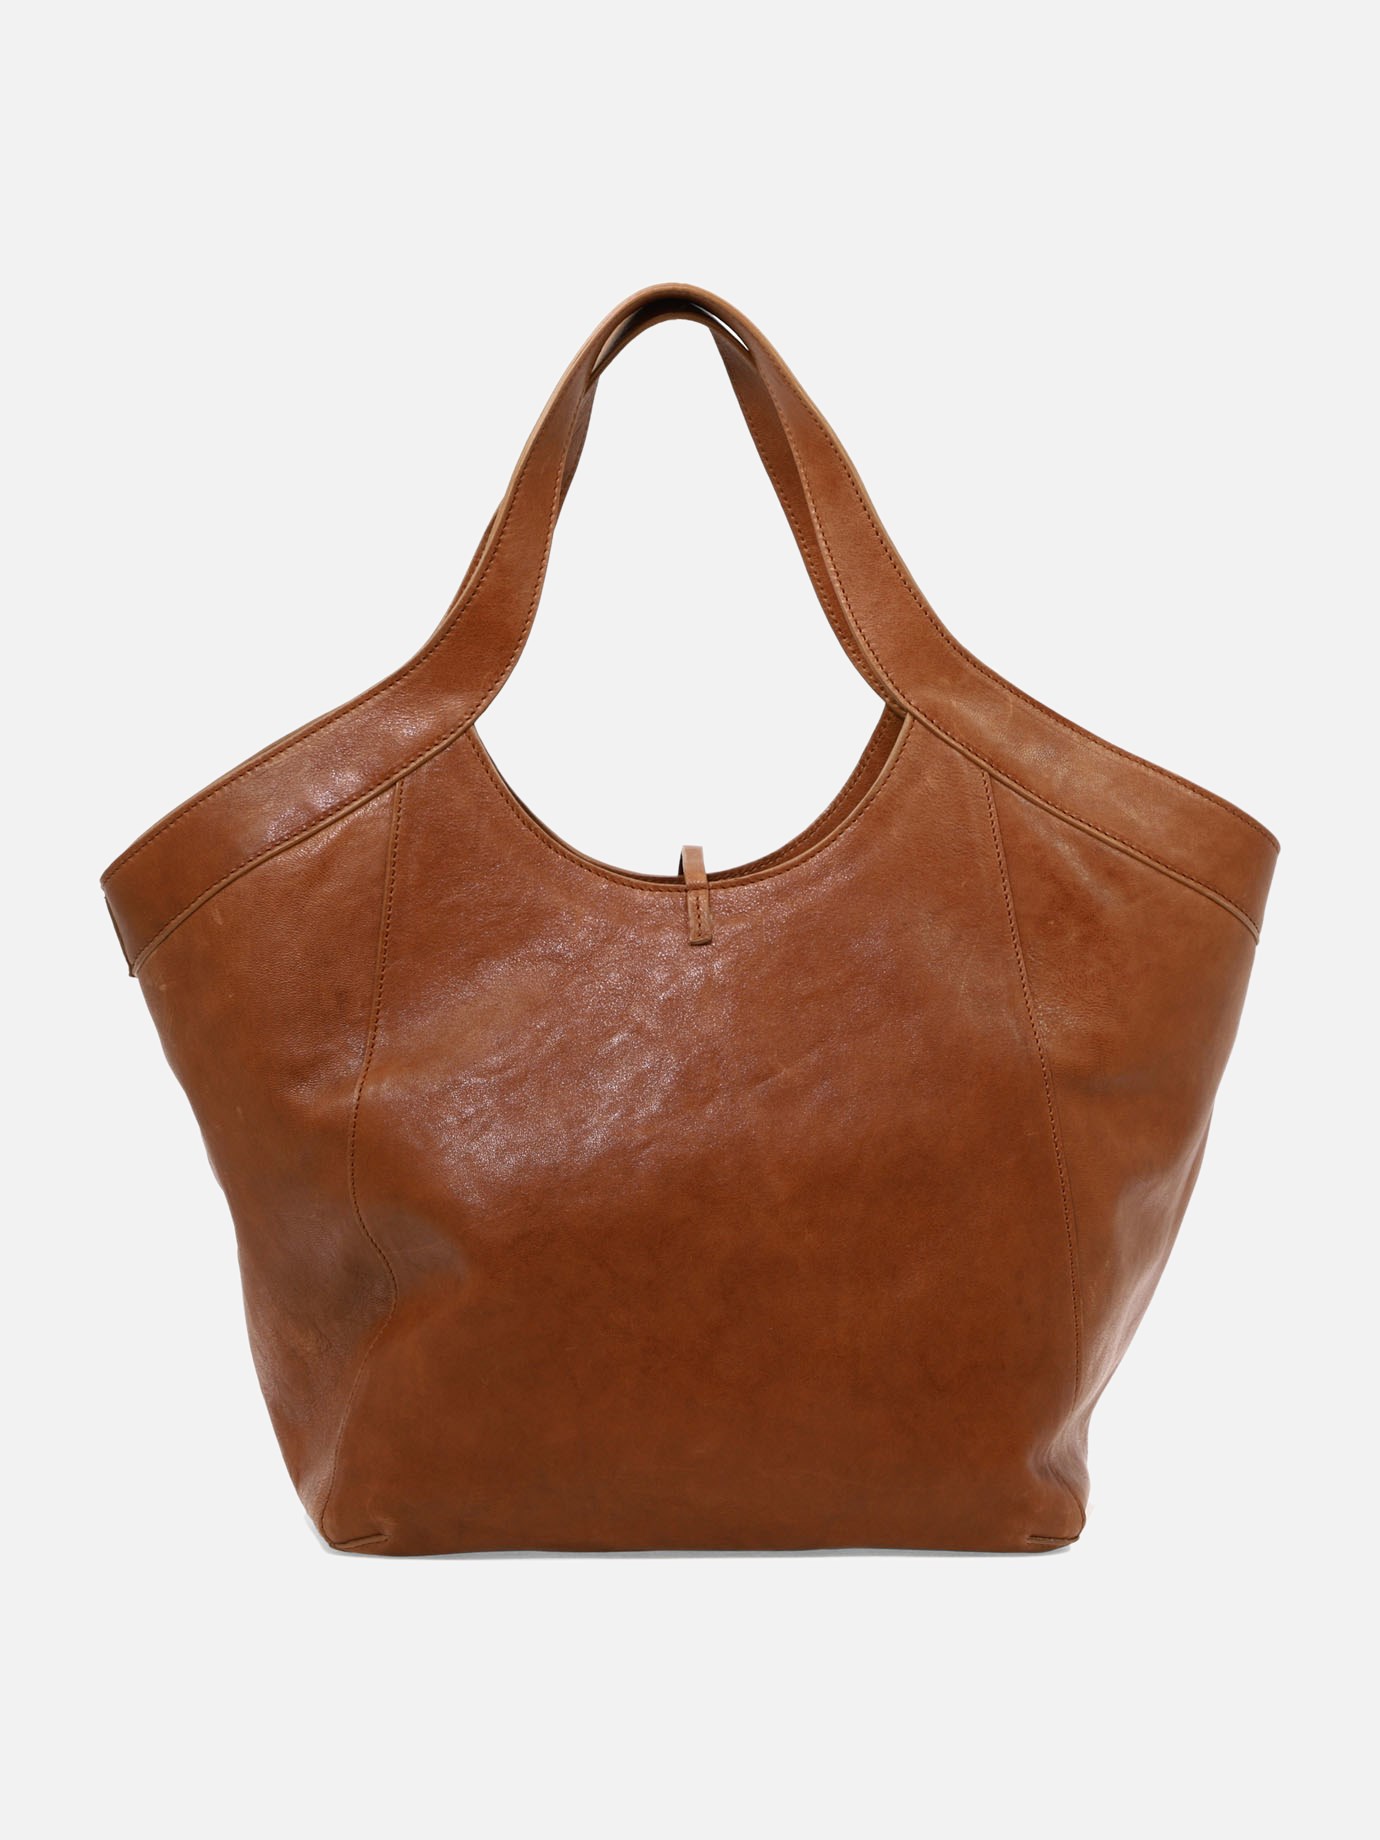  Lisa  shoulder bag by Amma Mode